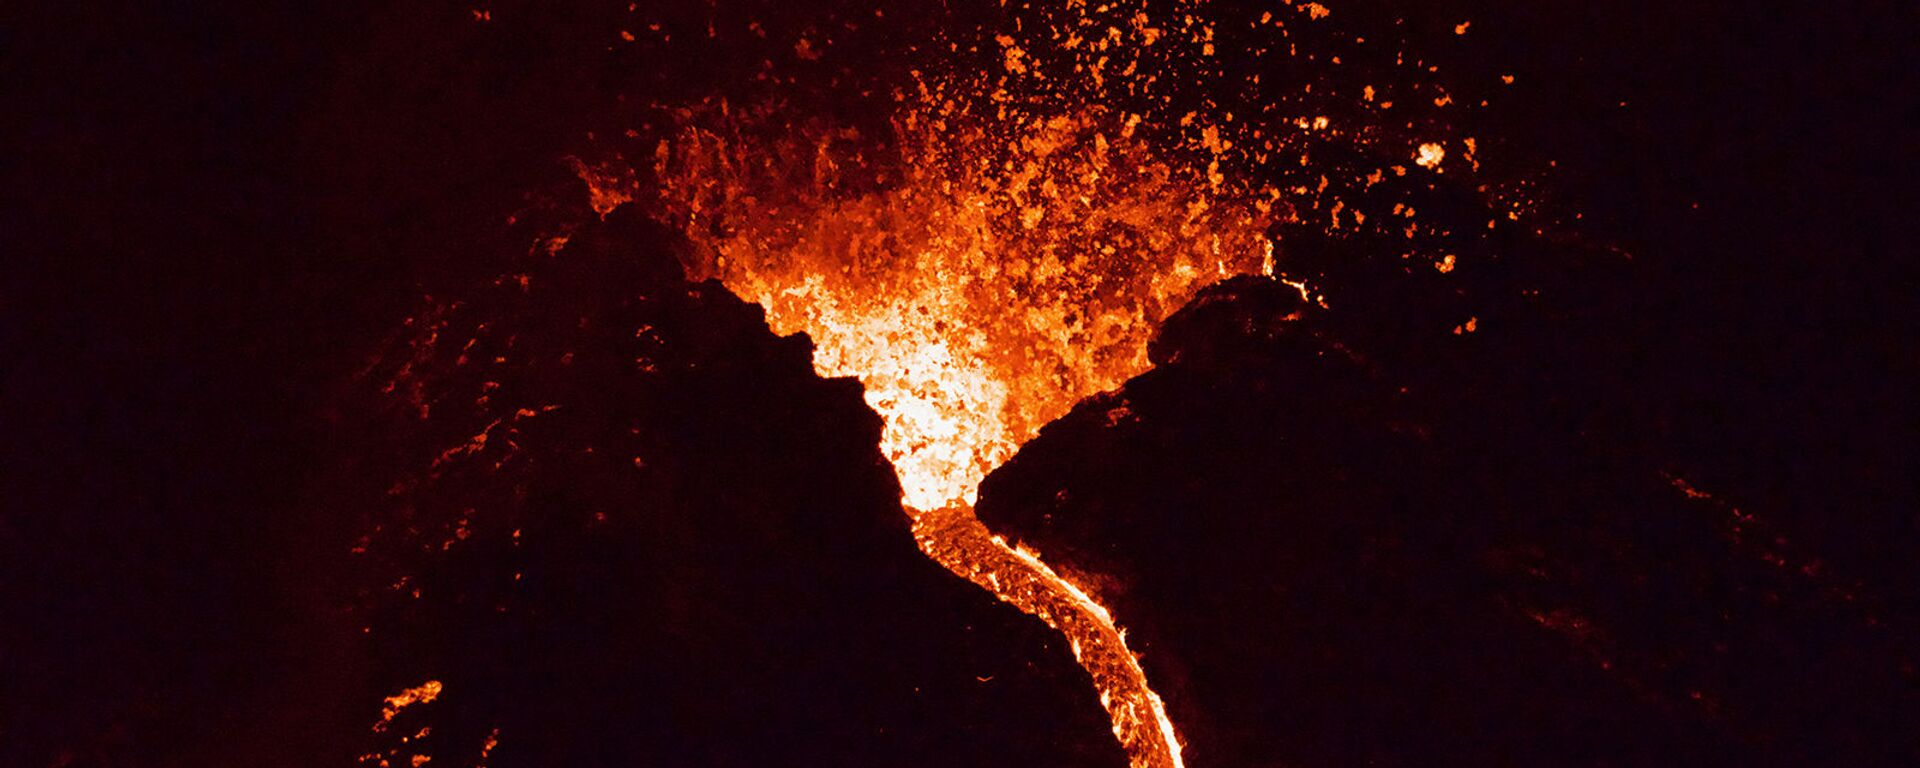 Лава течет из извергающегося вулкана Фаградалсфьяль примерно в 40 км к западу от Рейкьявика )26 марта 2021). Исландия - Sputnik Արմենիա, 1920, 27.03.2021